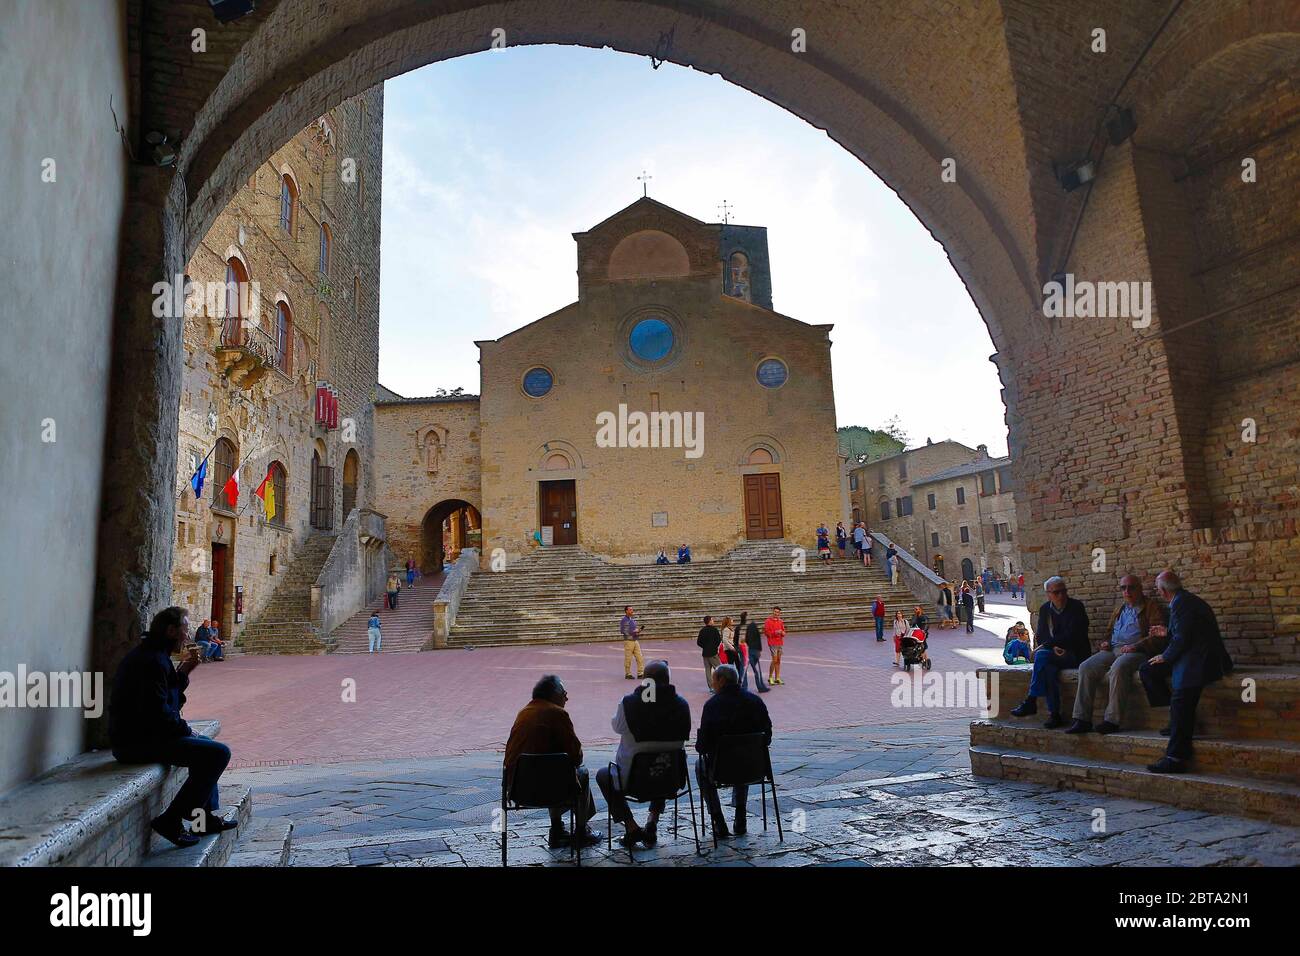 San Gimignano ist eine der bekanntesten mittelalterlichen Städte Italiens. Die Kleinstadt hat fast 8000 Einwohner und ist bekannt durch seine Geschlec Stock Photo